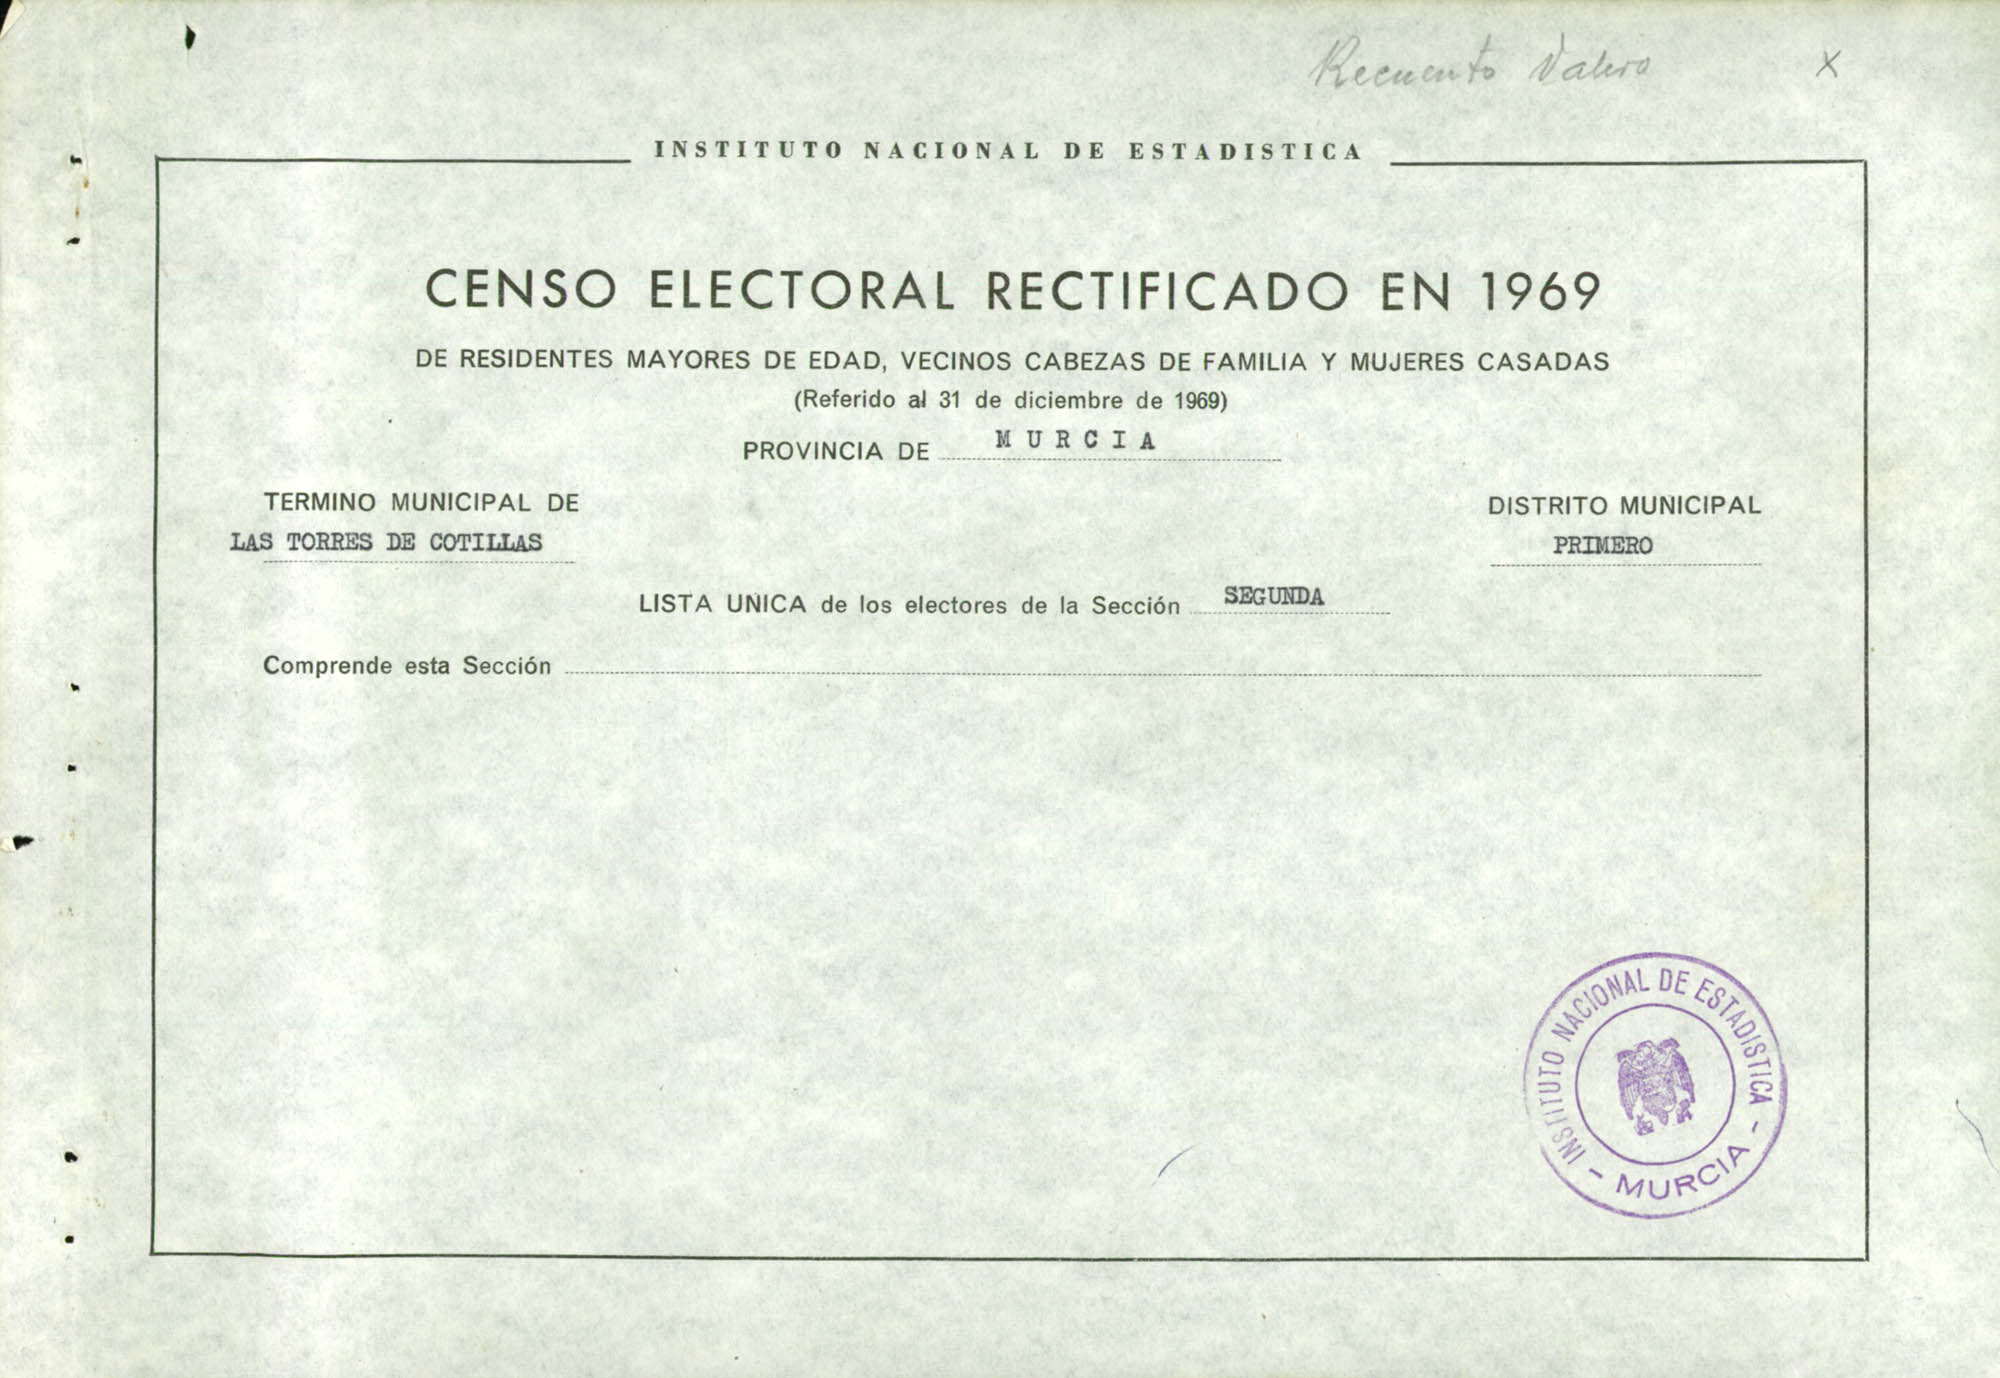 Censo electoral rectificado en 1969: listas definitivas de Las Torres de Cotillas, Distrito 1º, sección 2ª.